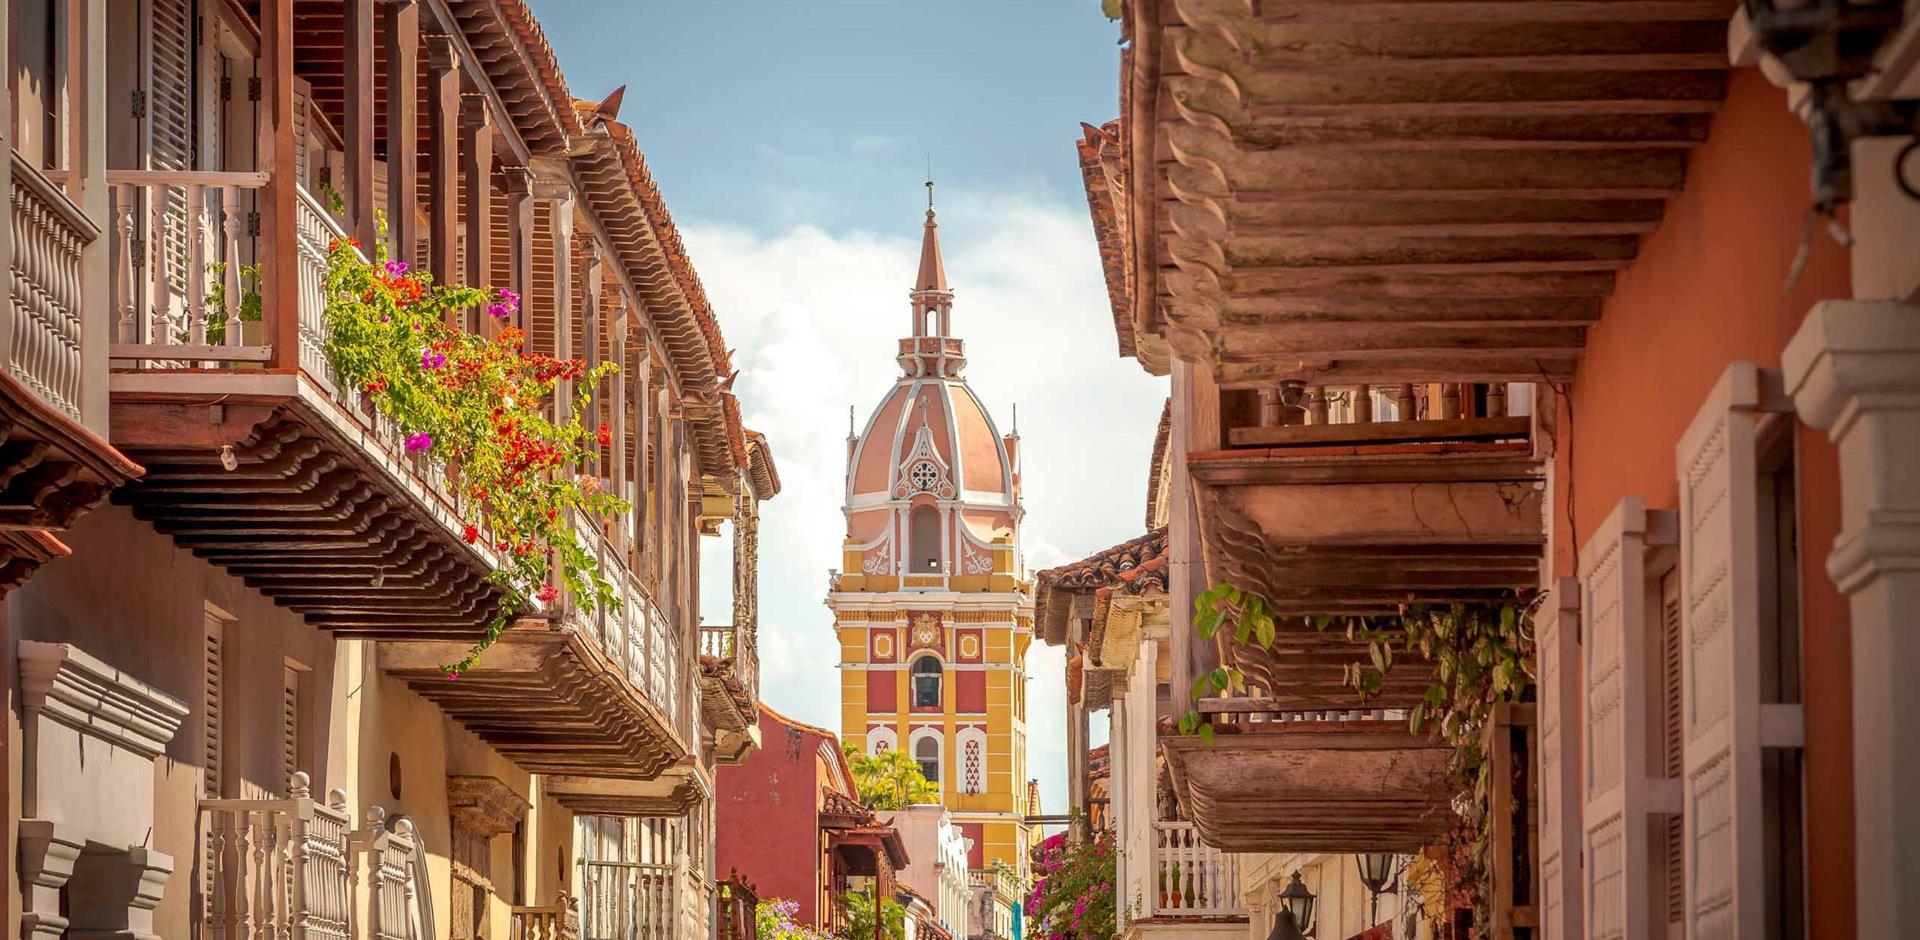 Cartagena de Indias, the walled city, Colombia